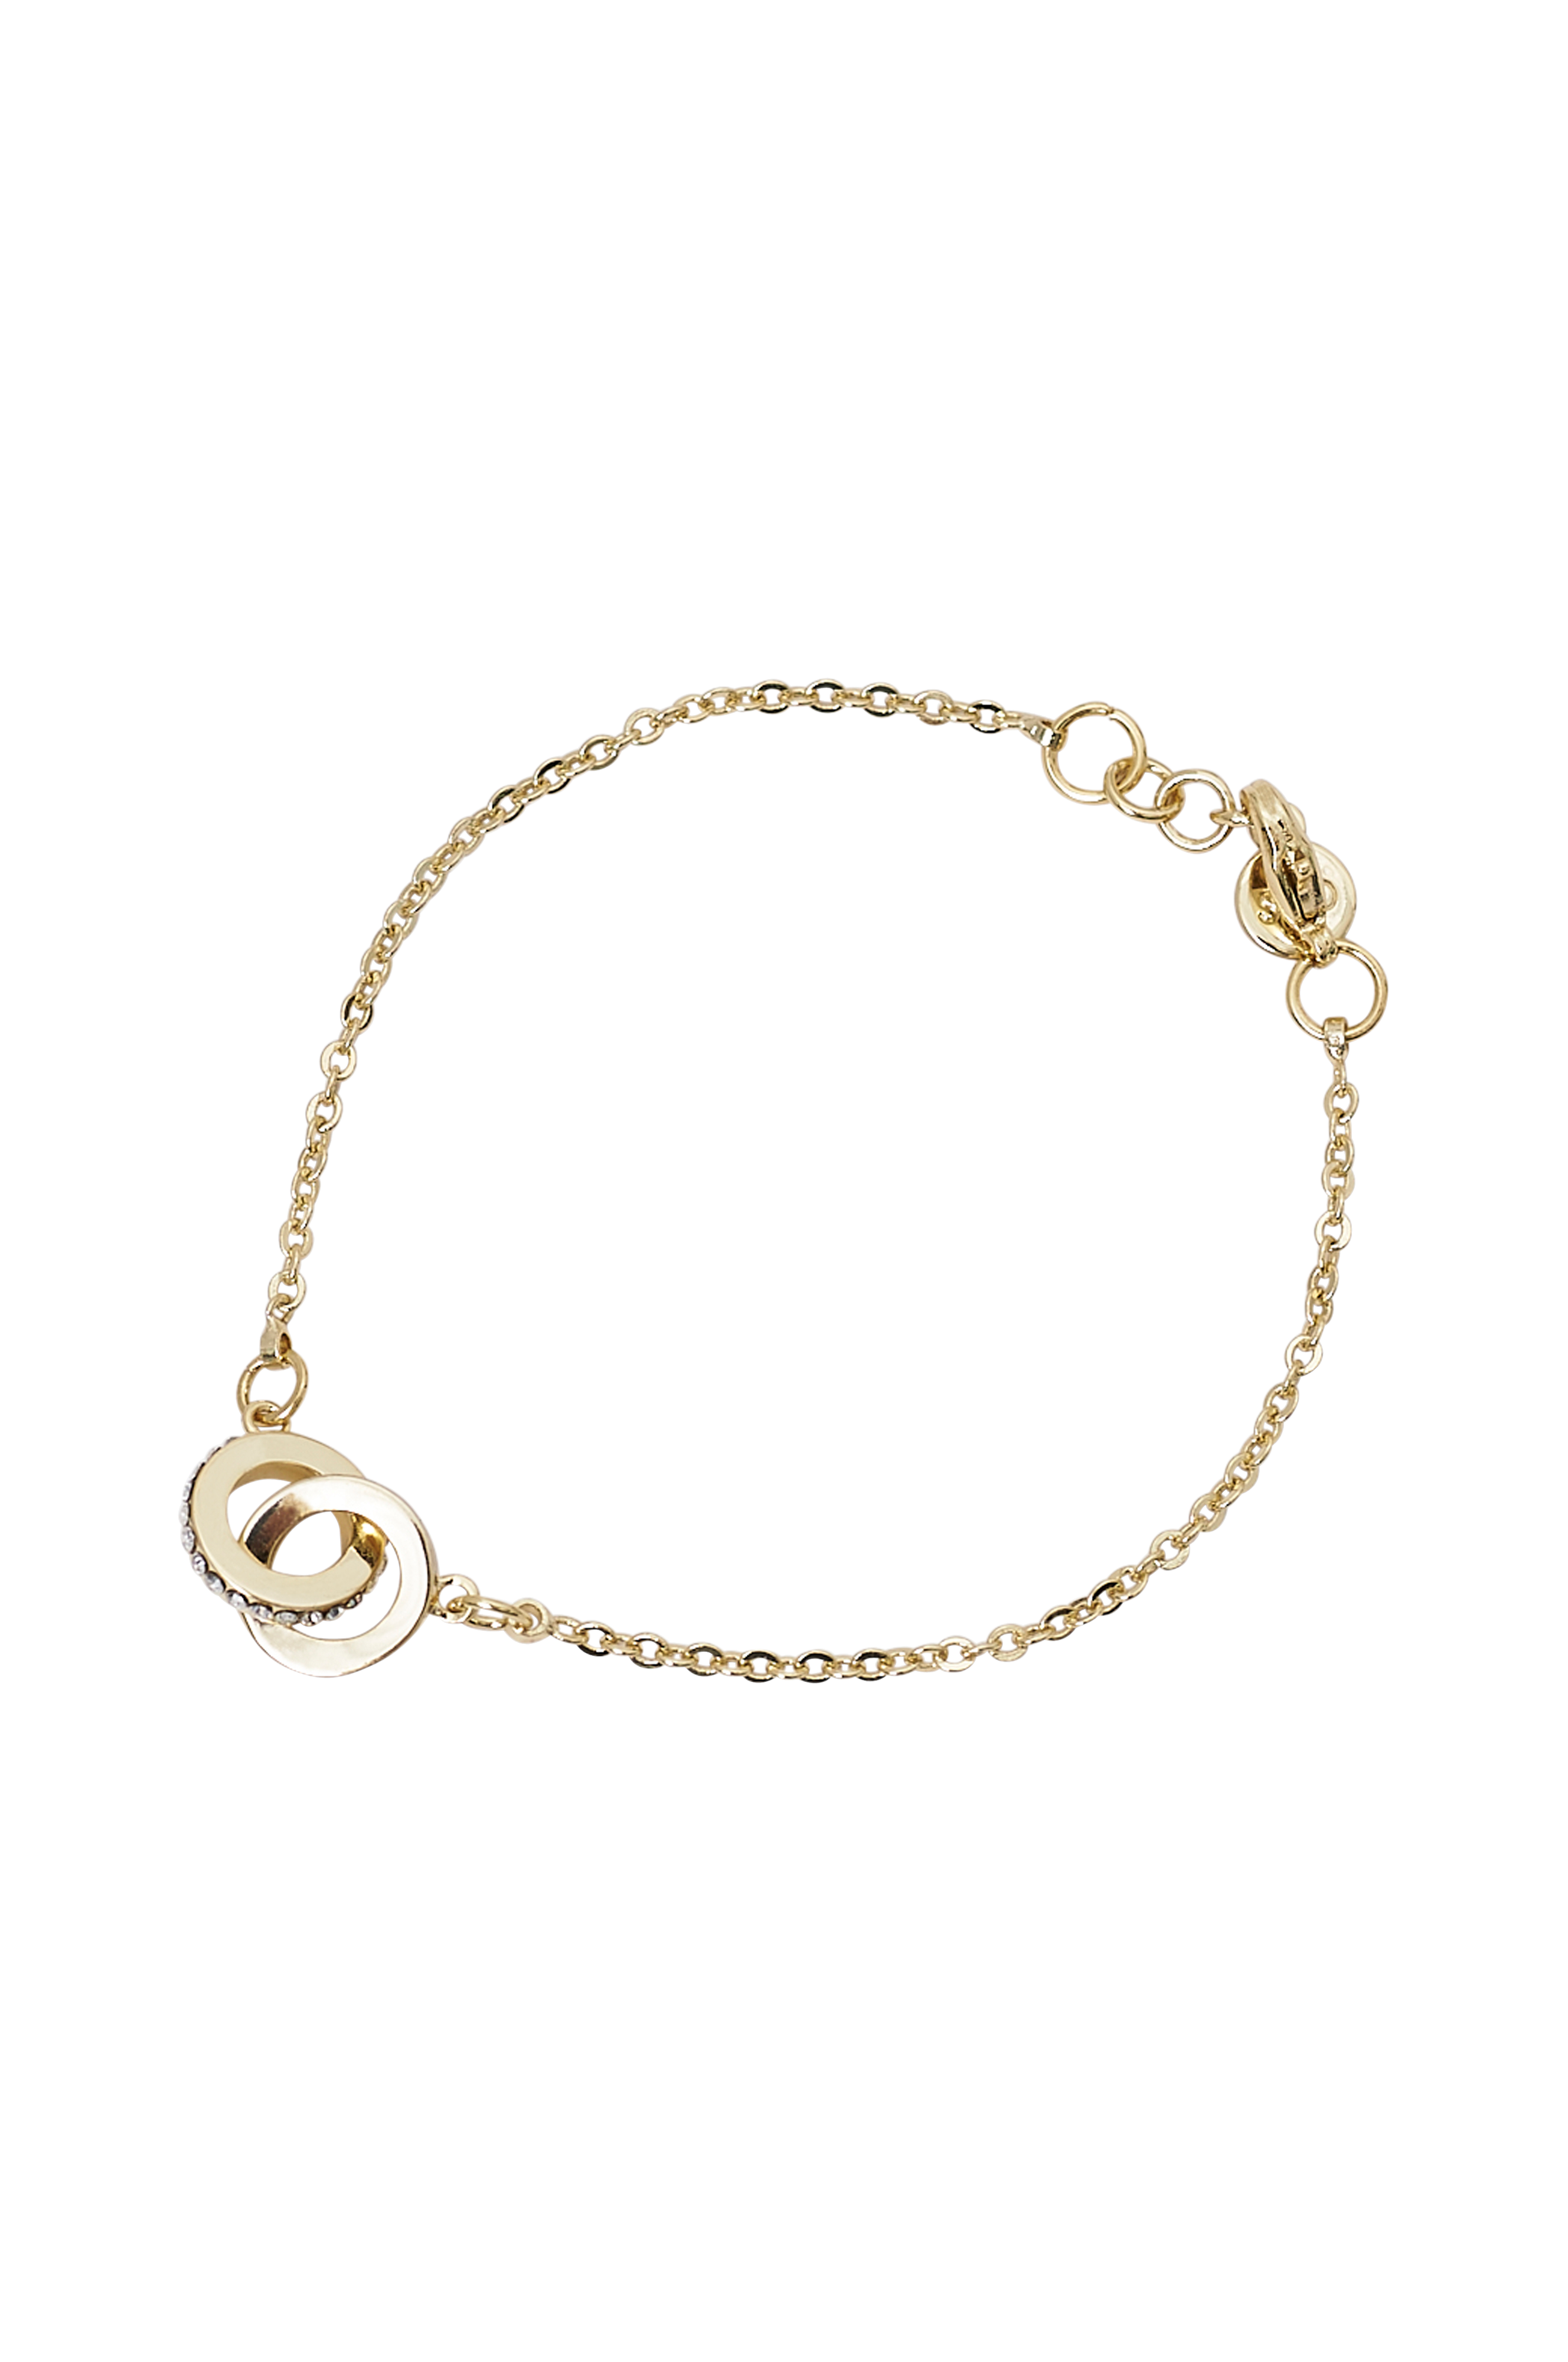 andrageren Foran Uegnet Snö of Sweden Armbånd Connected Chain Bracelet - Guld - Armbånd | Ellos.dk